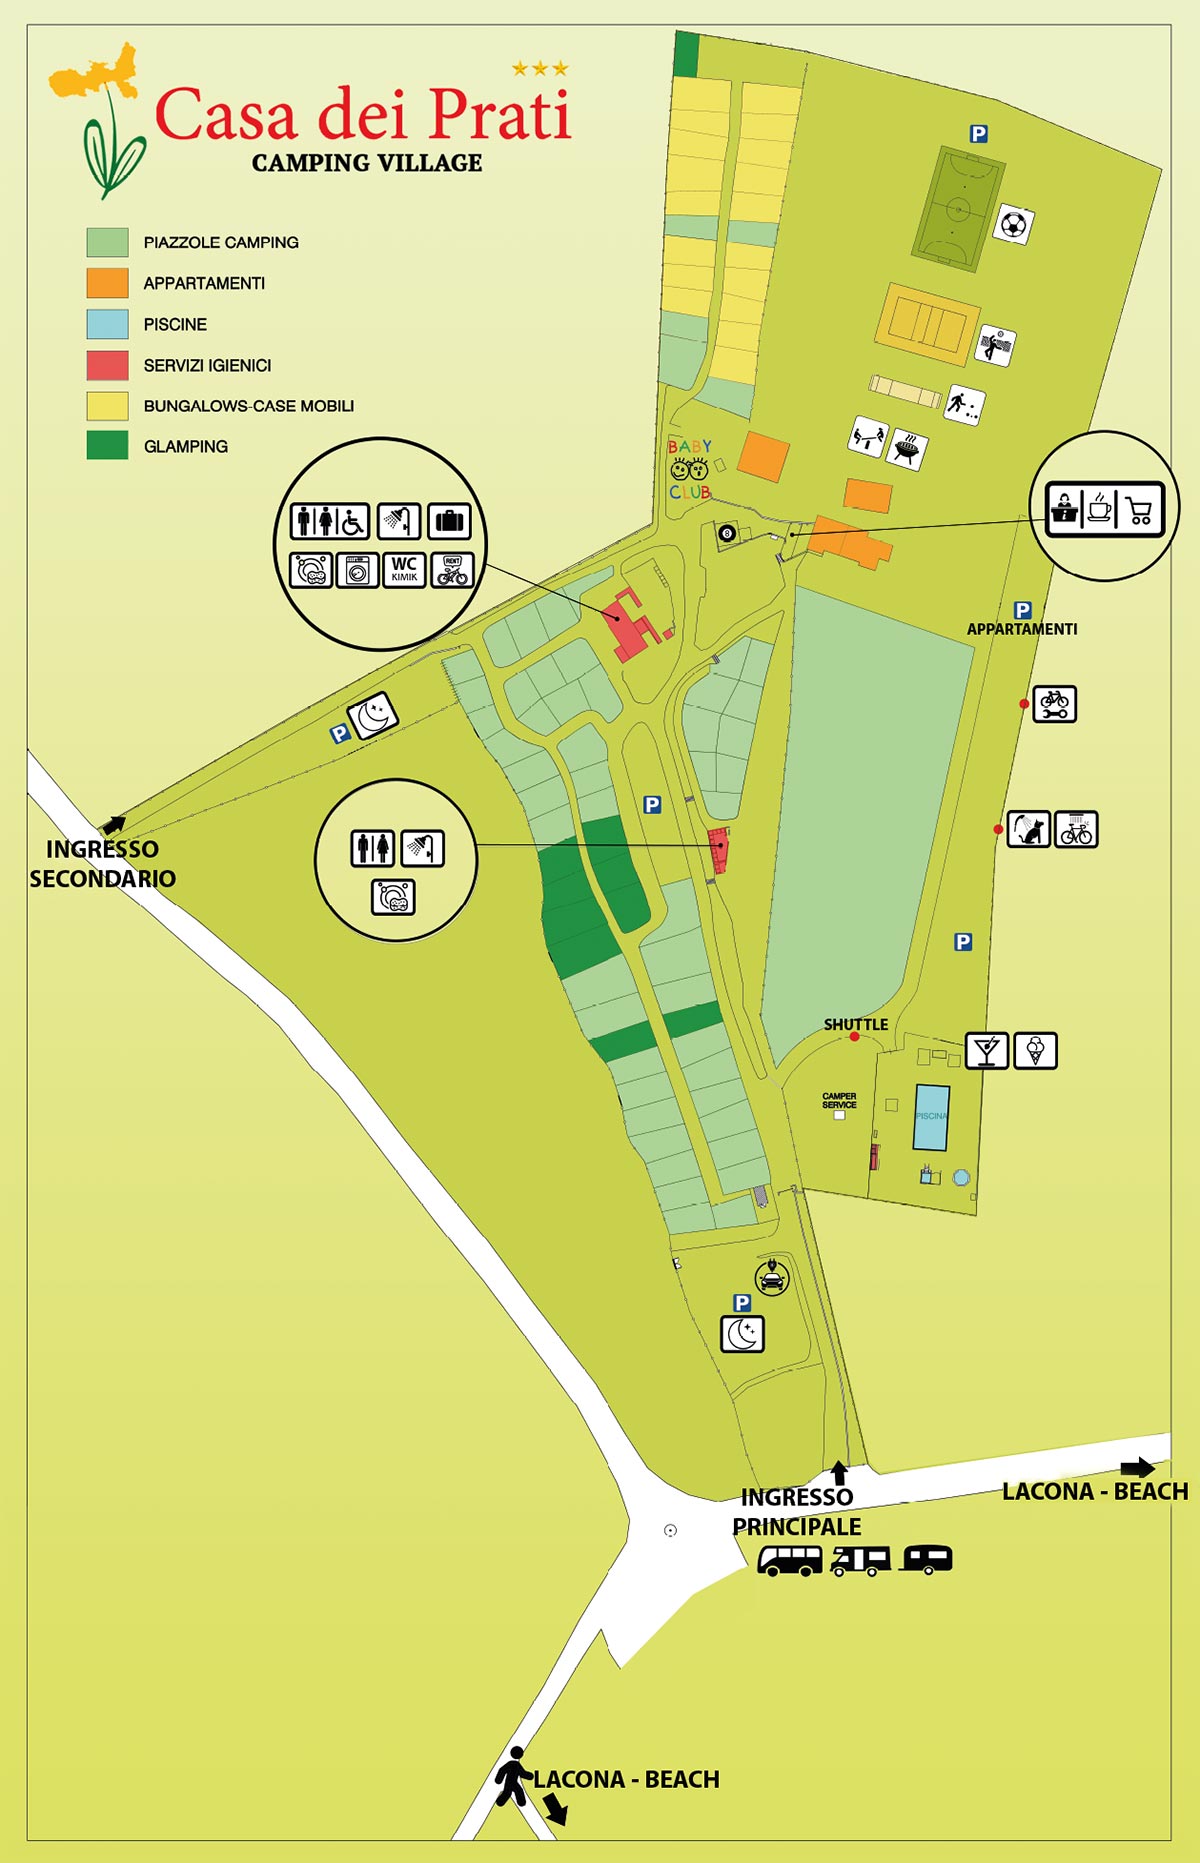 Map of Camping Casa dei Prati Village in Lacona